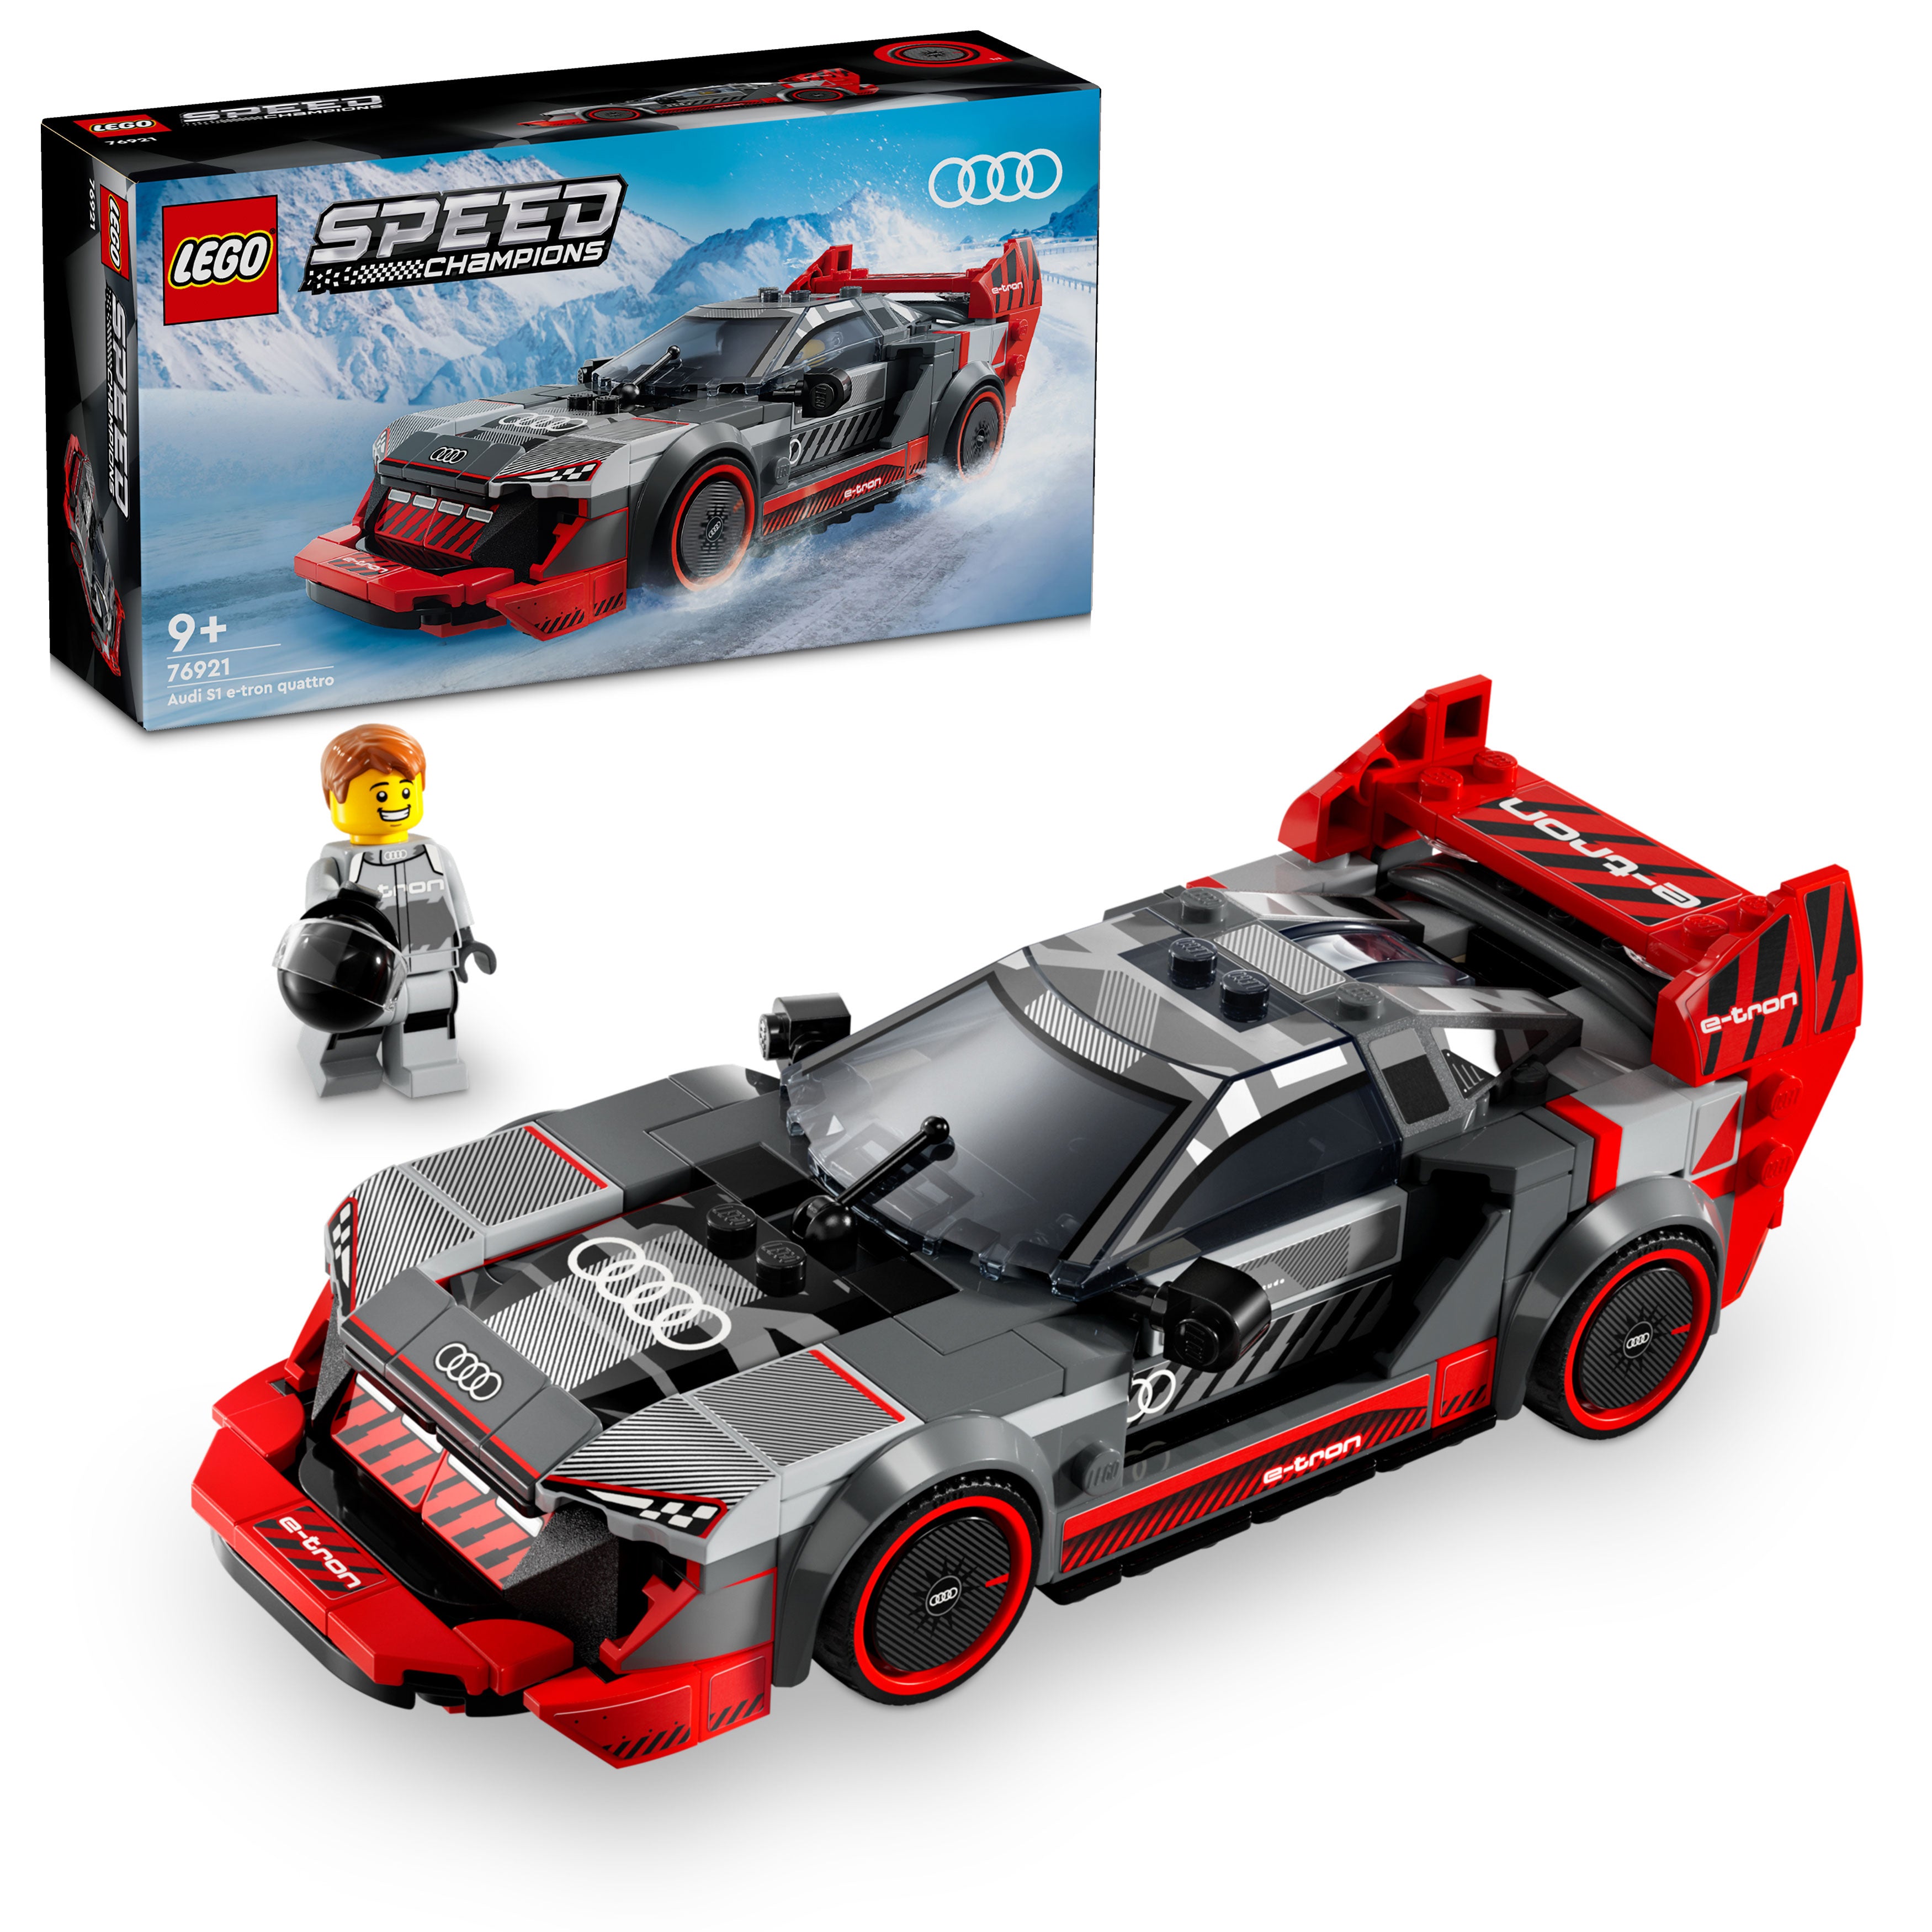 Lego 76921 Audi S1 e-tron quattro R